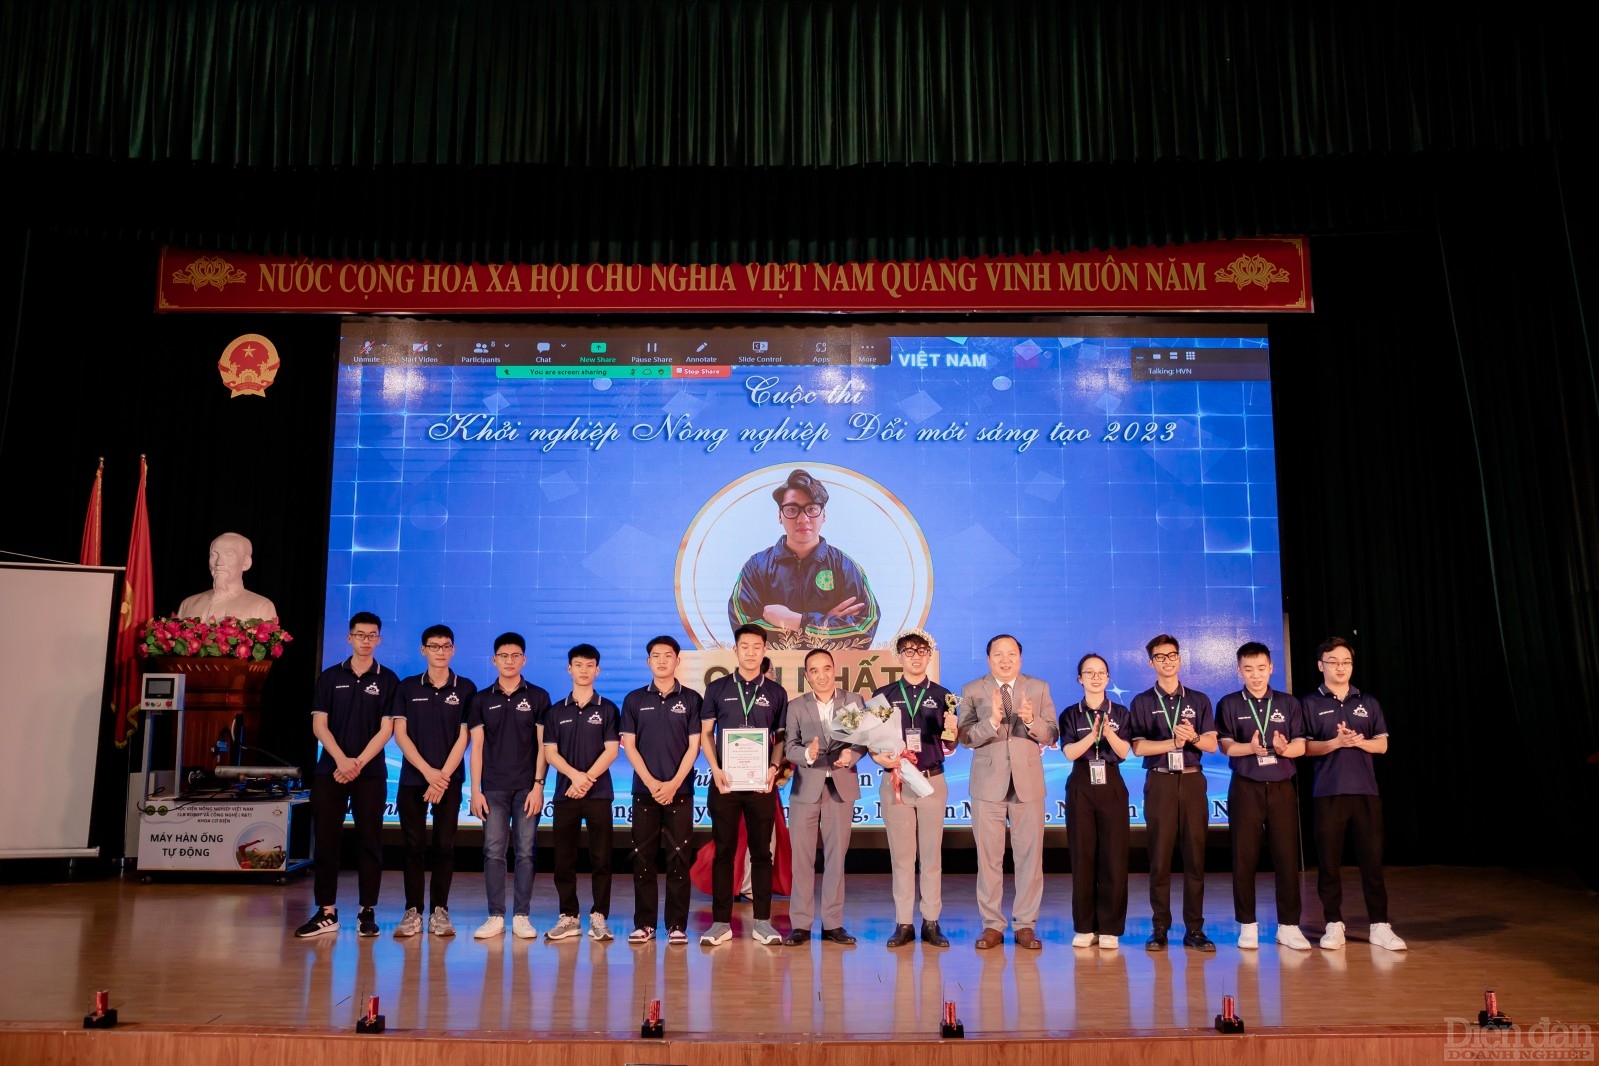 Ban tổ chức trao giải Nhất cho các tác giả của dự án “Chế tạo máy hàn tự động” của sinh viên Học viện Nông nghiệp Việt Nam.